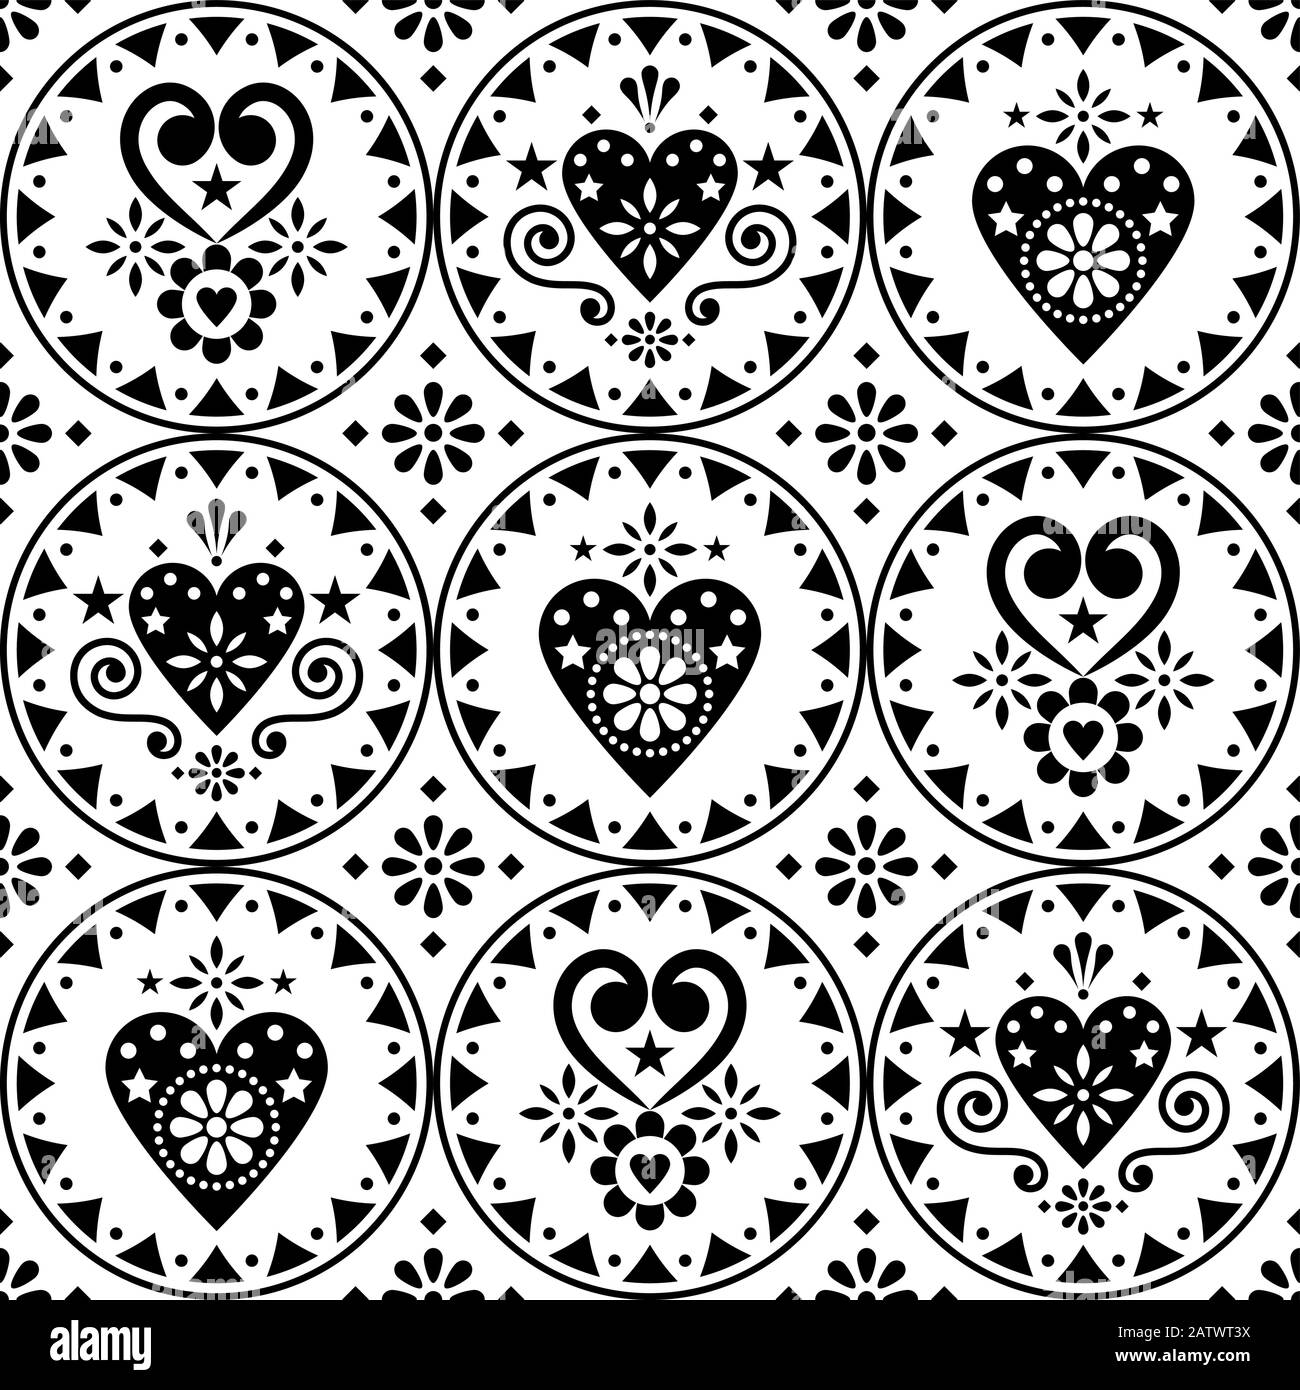 Vektor für den Valentinstag - nahtloses Muster - skandinavisches Design mit Herzen und Blumen Stock Vektor